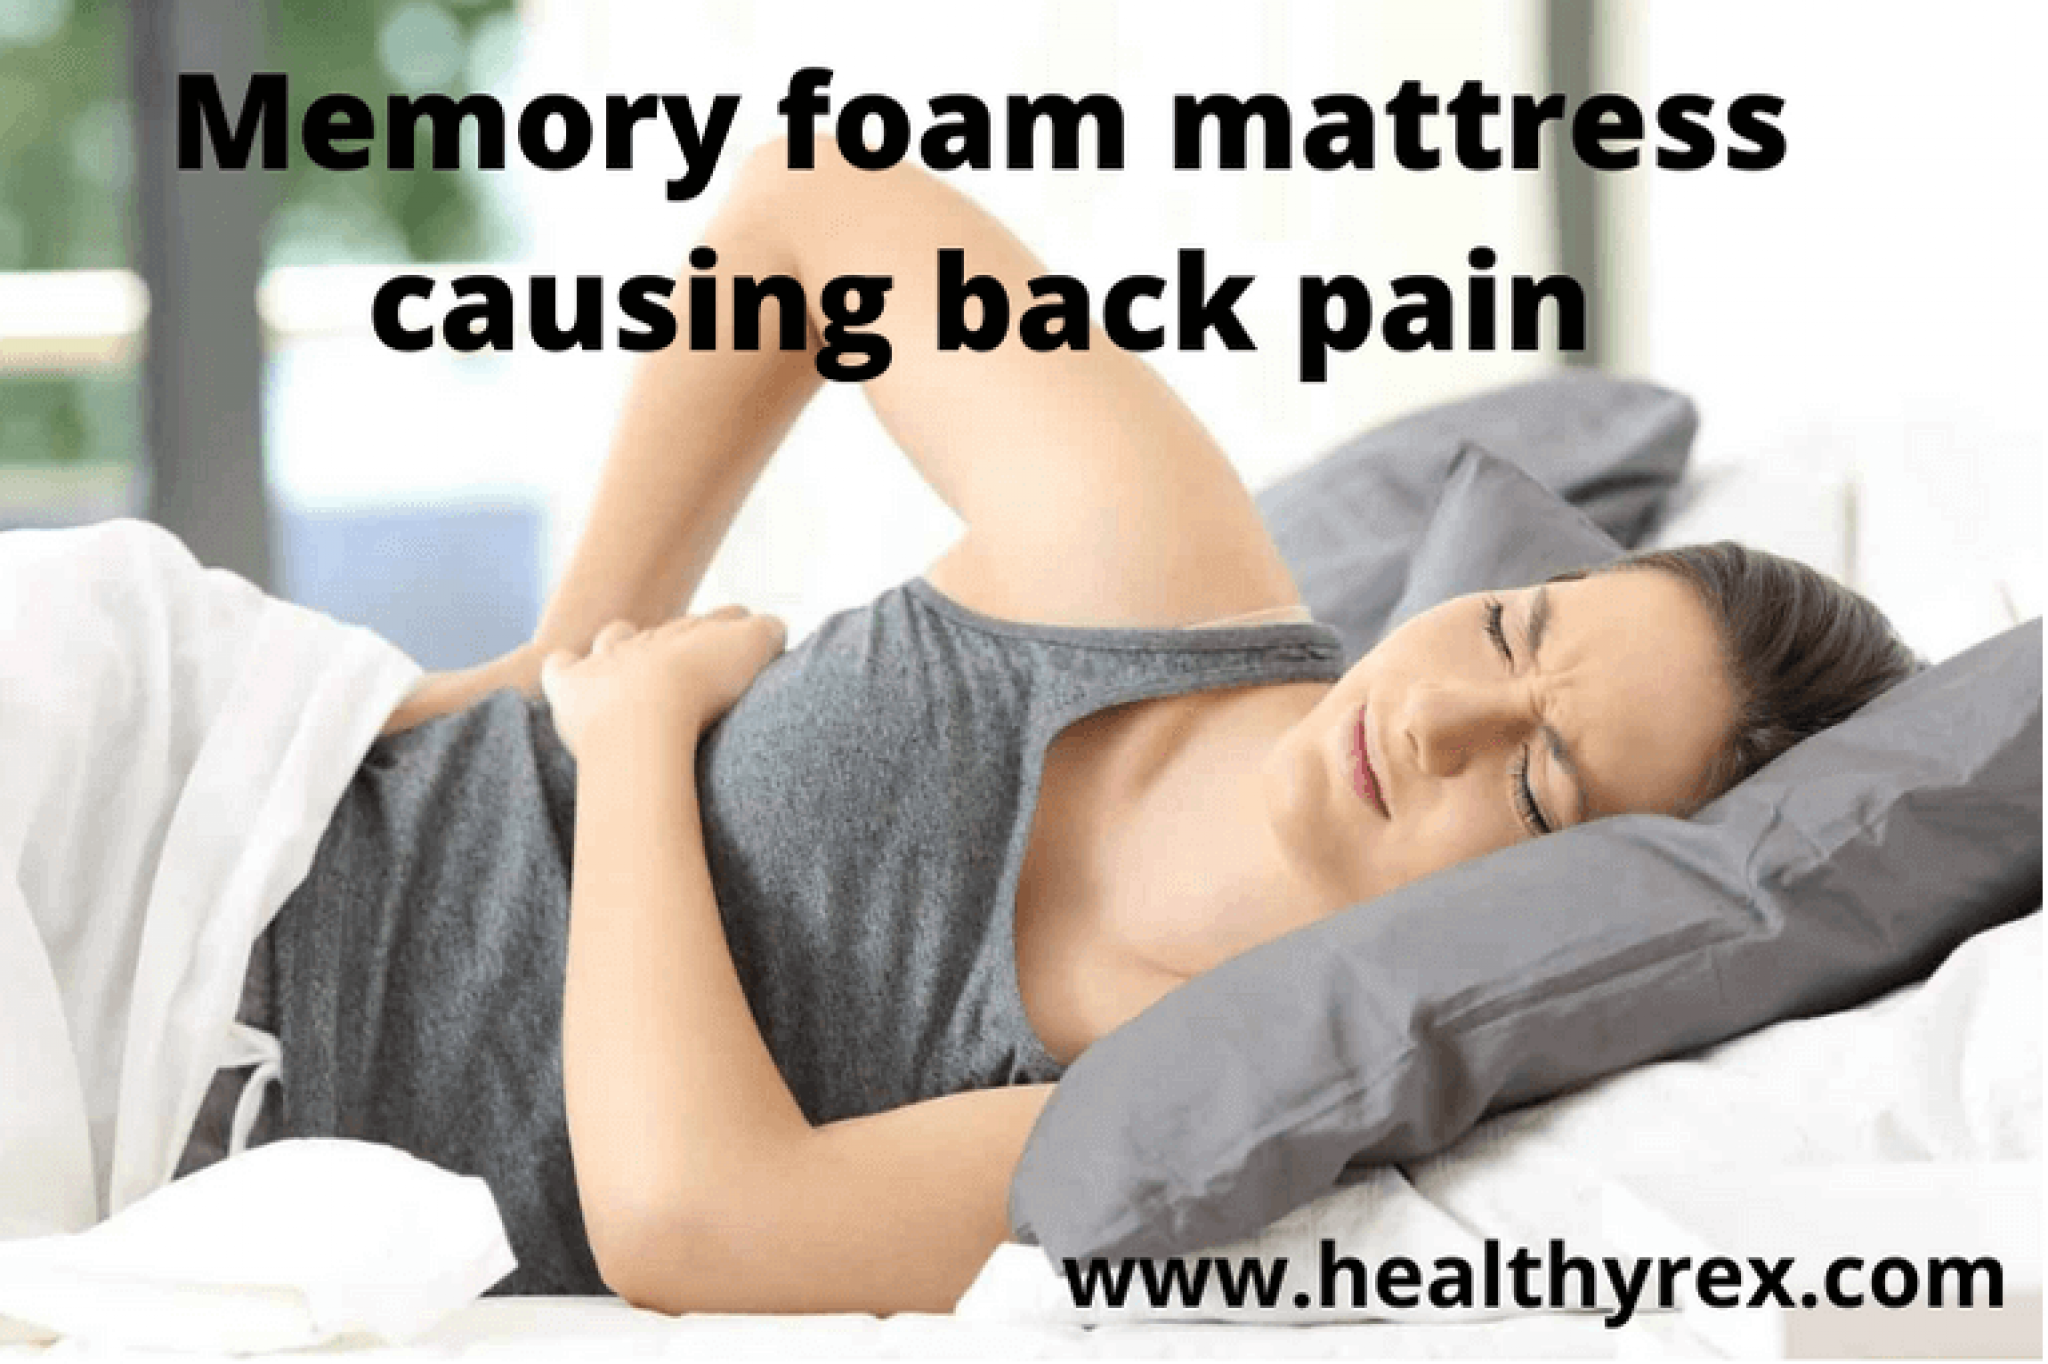 can memory foam mattress get bed bugs